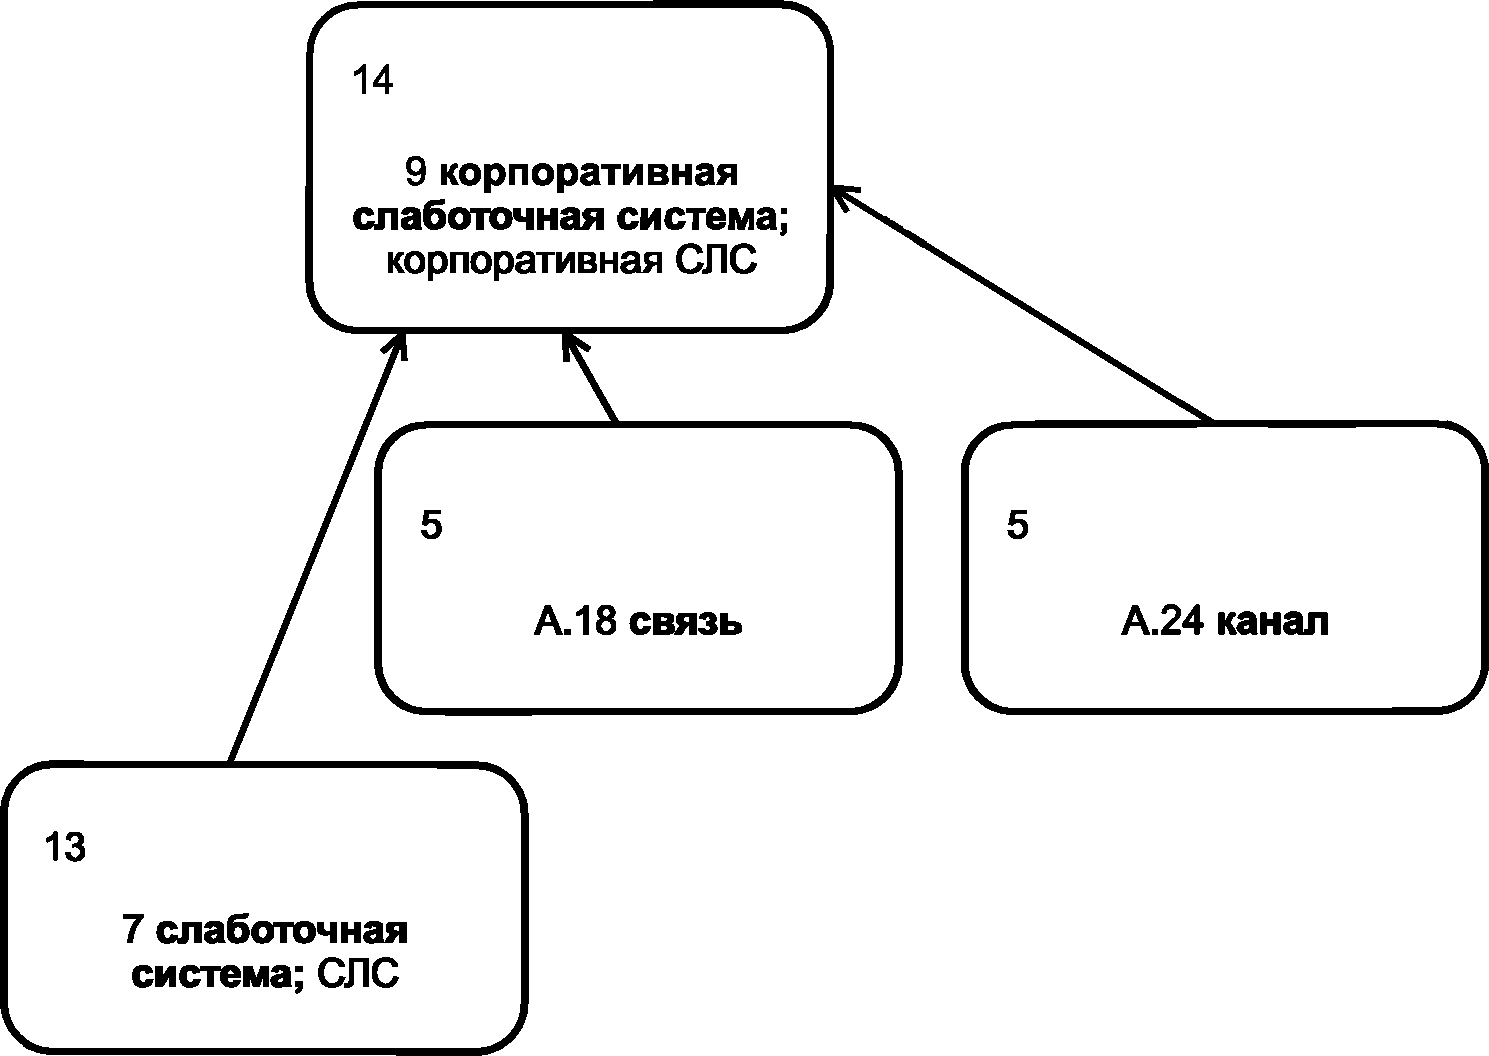 - Фрагмент графического представления графа для термина 9 корпоративная слаботочная система; корпоративная СЛС уровня 14